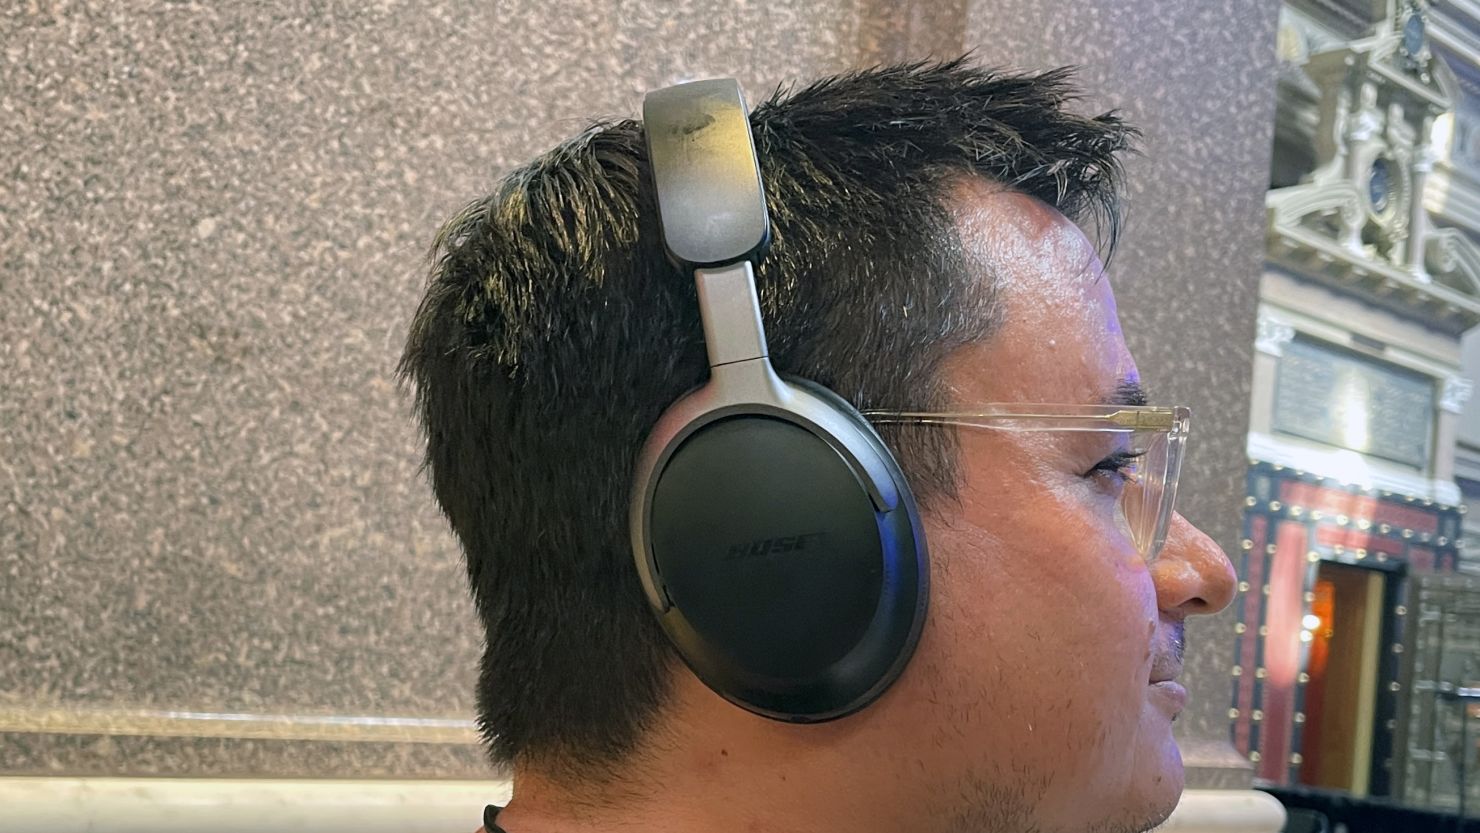 Bose QuietComfort Ultra Headphones Wireless Review 